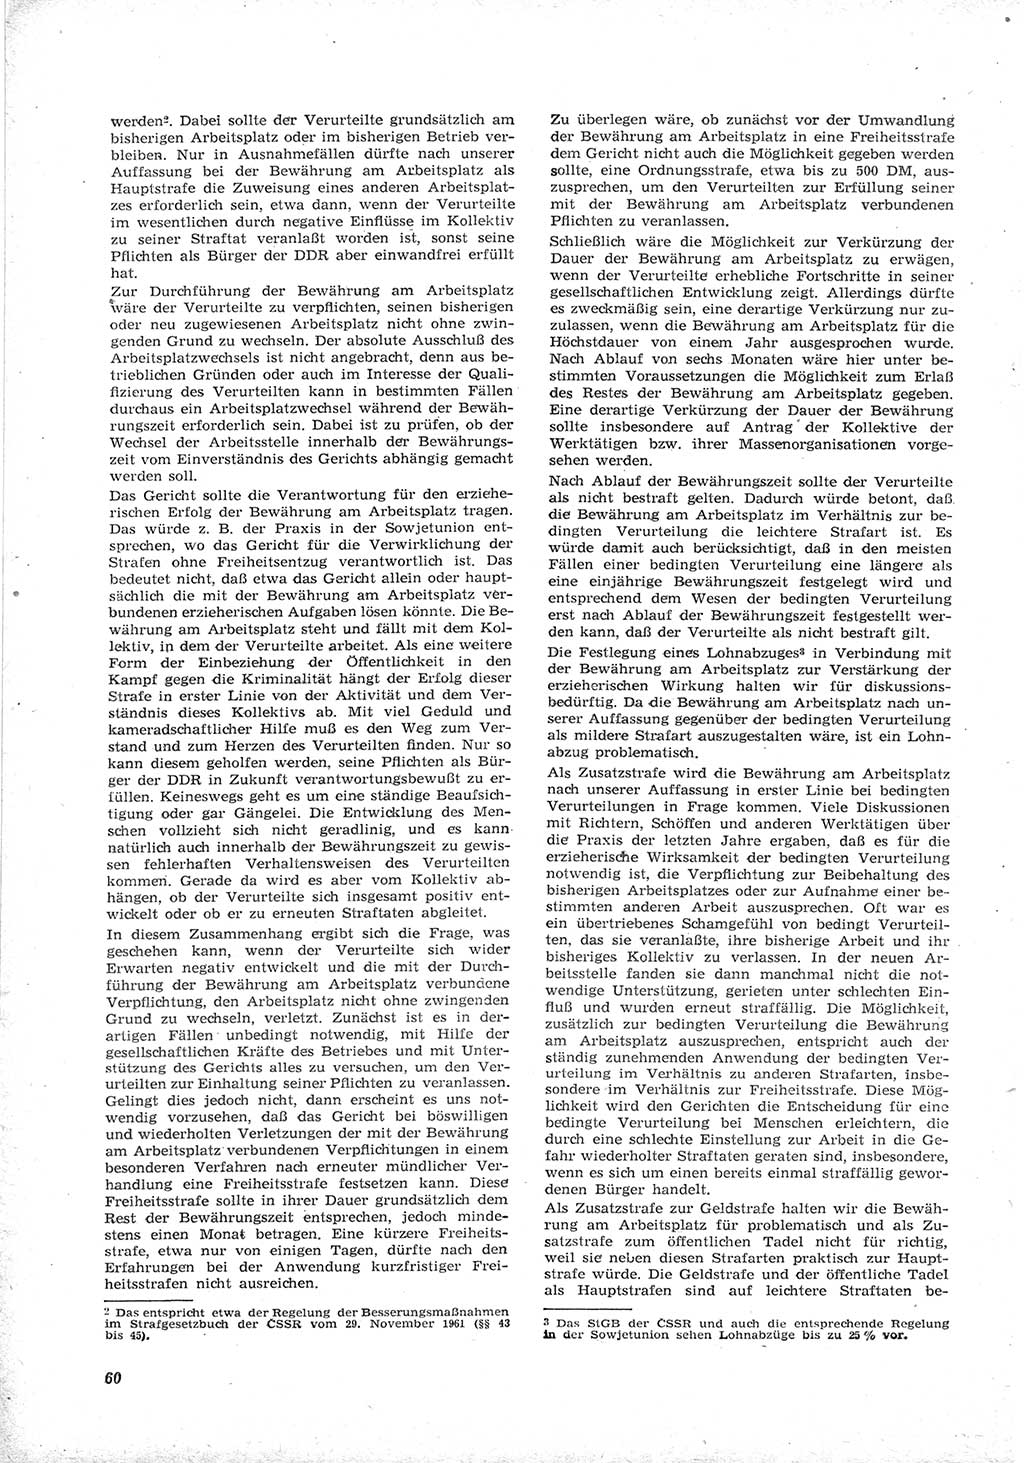 Neue Justiz (NJ), Zeitschrift für Recht und Rechtswissenschaft [Deutsche Demokratische Republik (DDR)], 17. Jahrgang 1963, Seite 60 (NJ DDR 1963, S. 60)